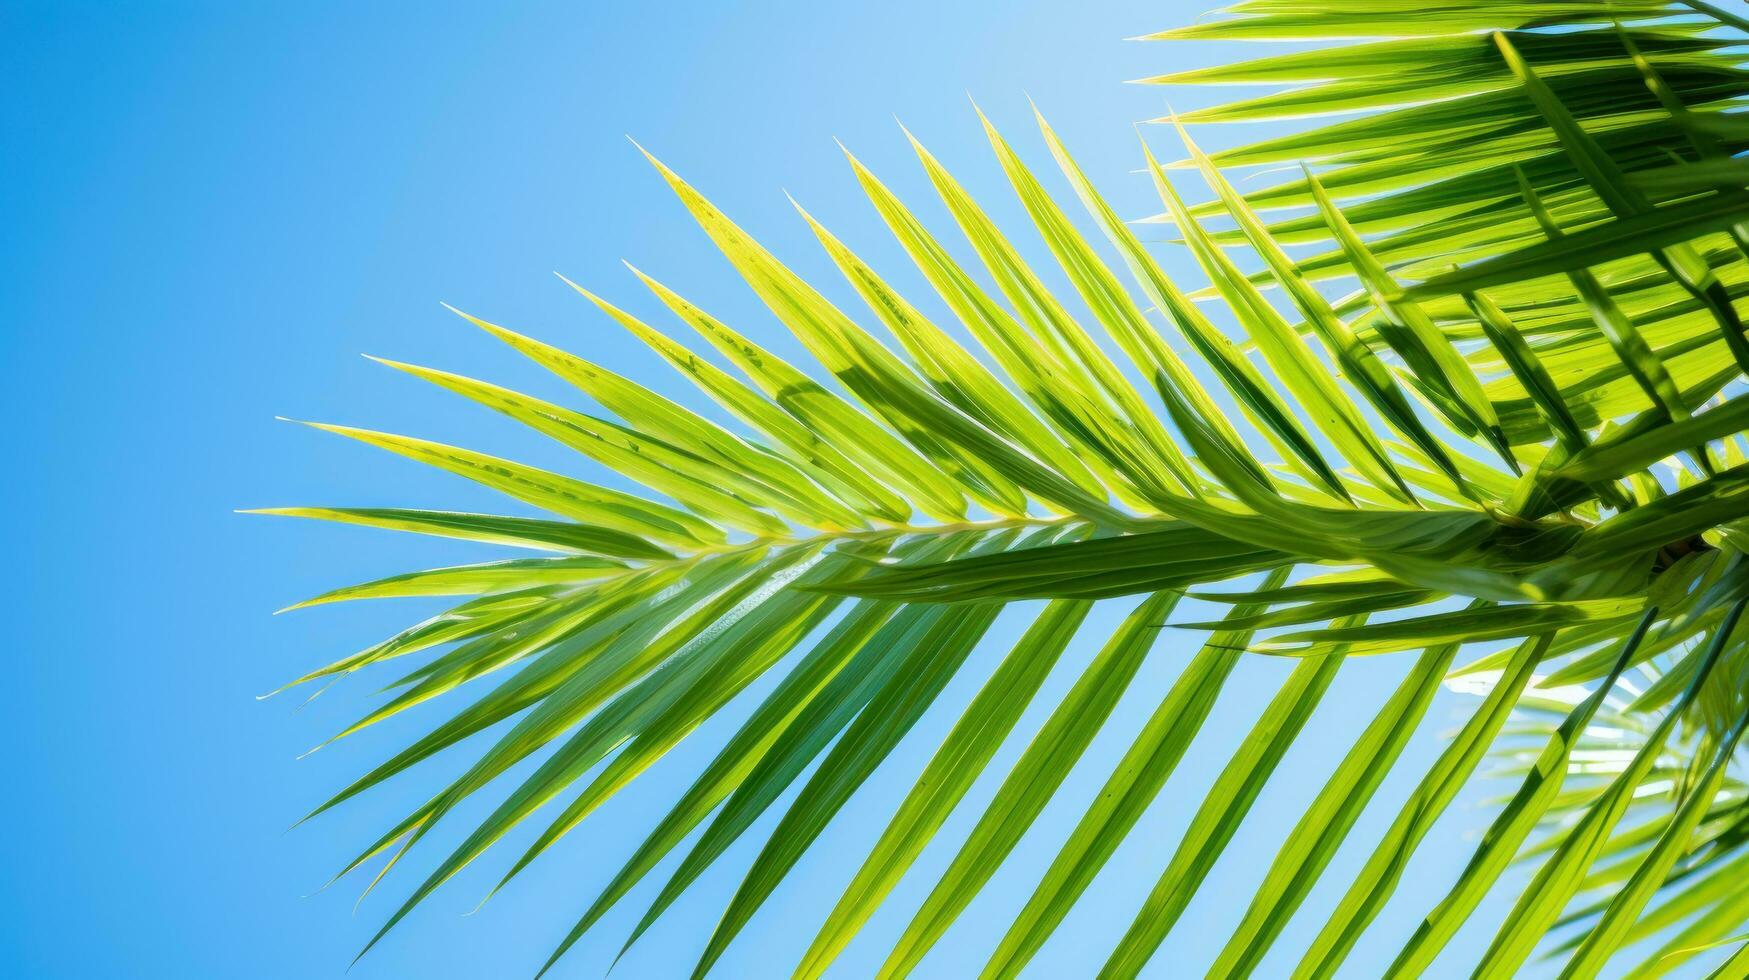 vibrante verde palma hojas en contra azul cielo foto